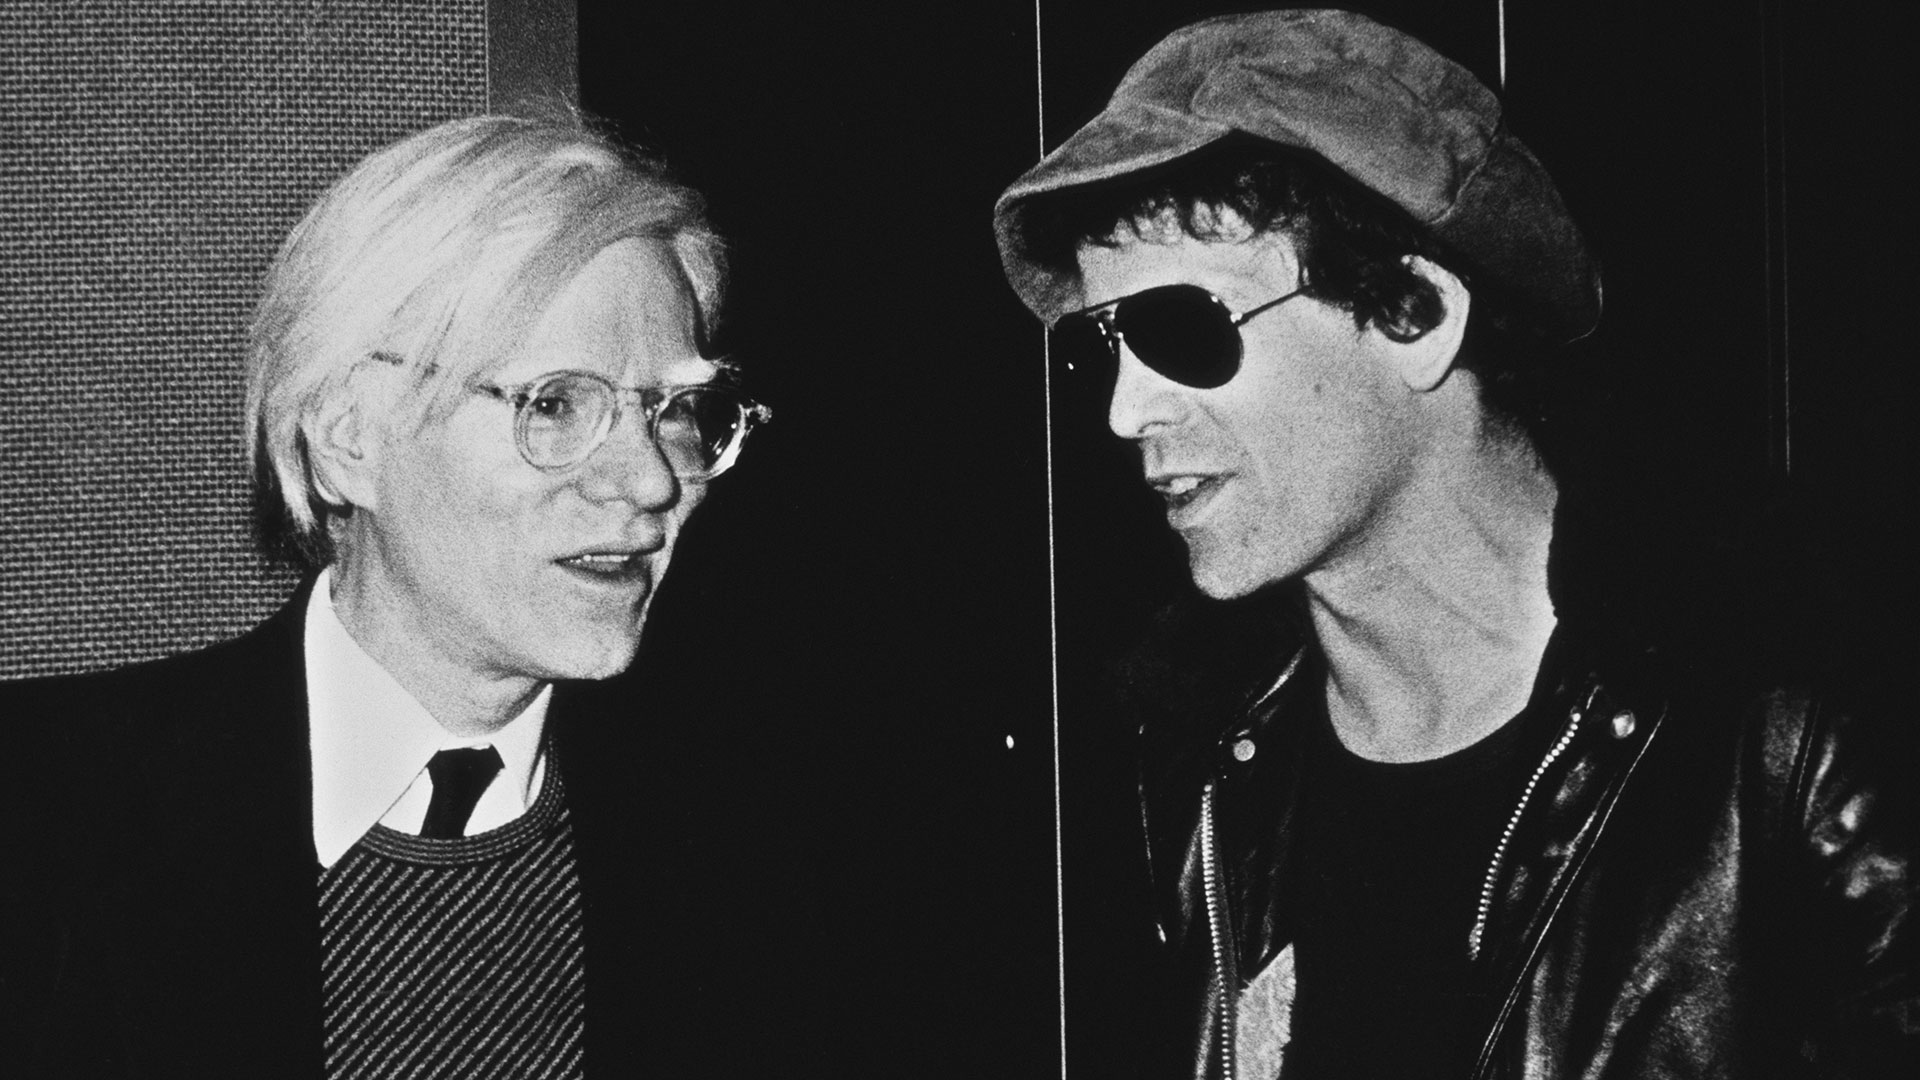 Andy Warhol fue el productor de la Velvet Underground y el diseñador de la tapa de la banana. La relación entre Reed y él tuvo altibajos. Tras la muerte de Andy, Lou Reed se juntó con John Cale y editaron SOngs For Drella, un disco homenaje a Warhol (Photo by Richard E. Aaron/Redferns/Getty Images)